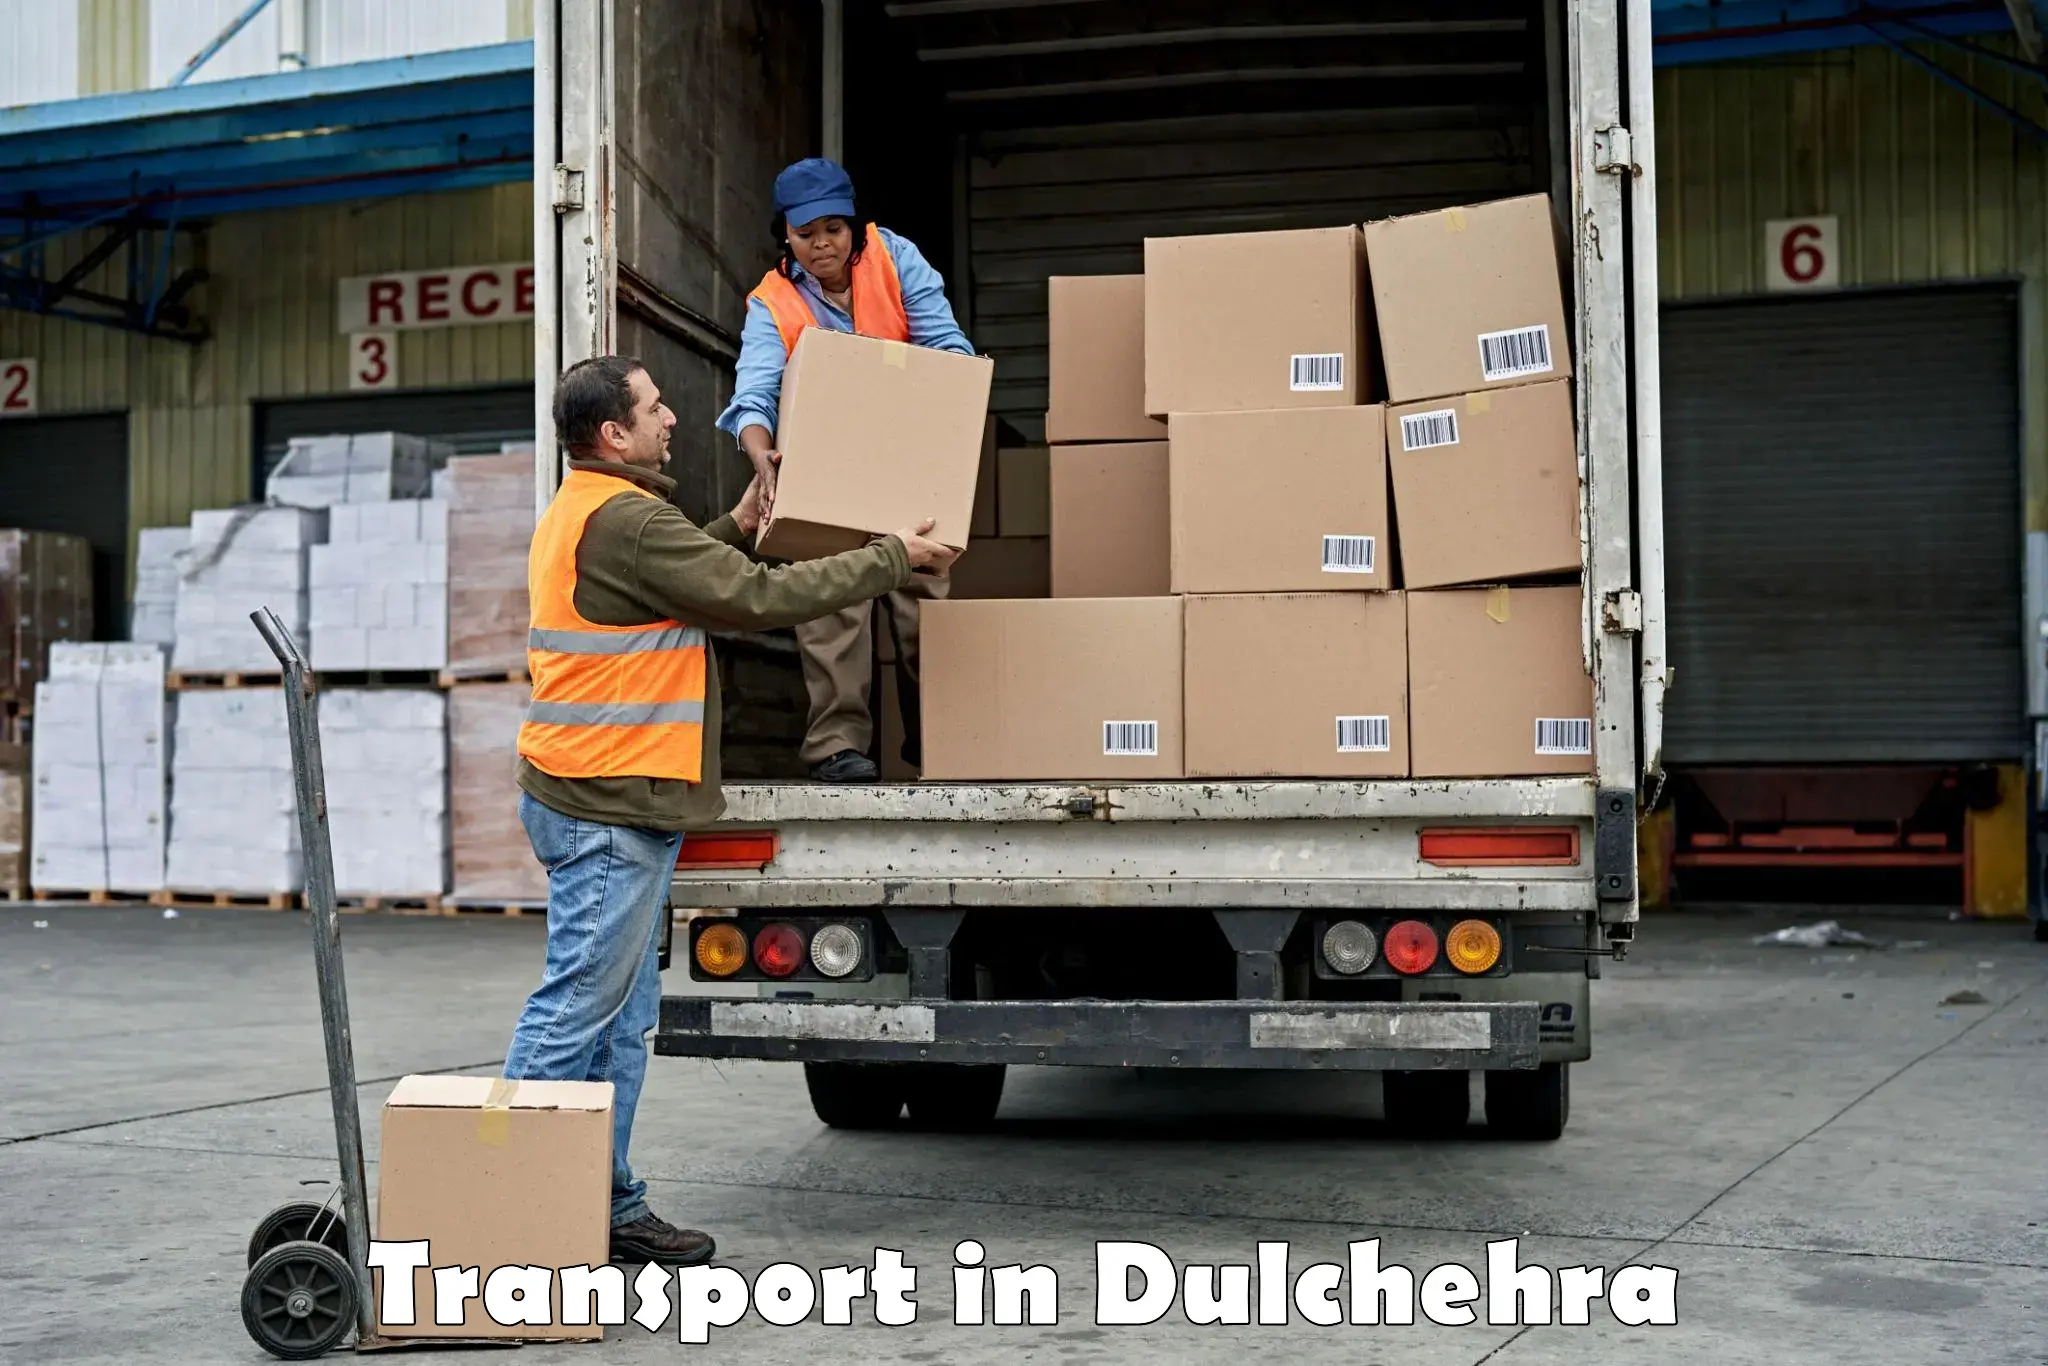 Online transport service in Dulchehra